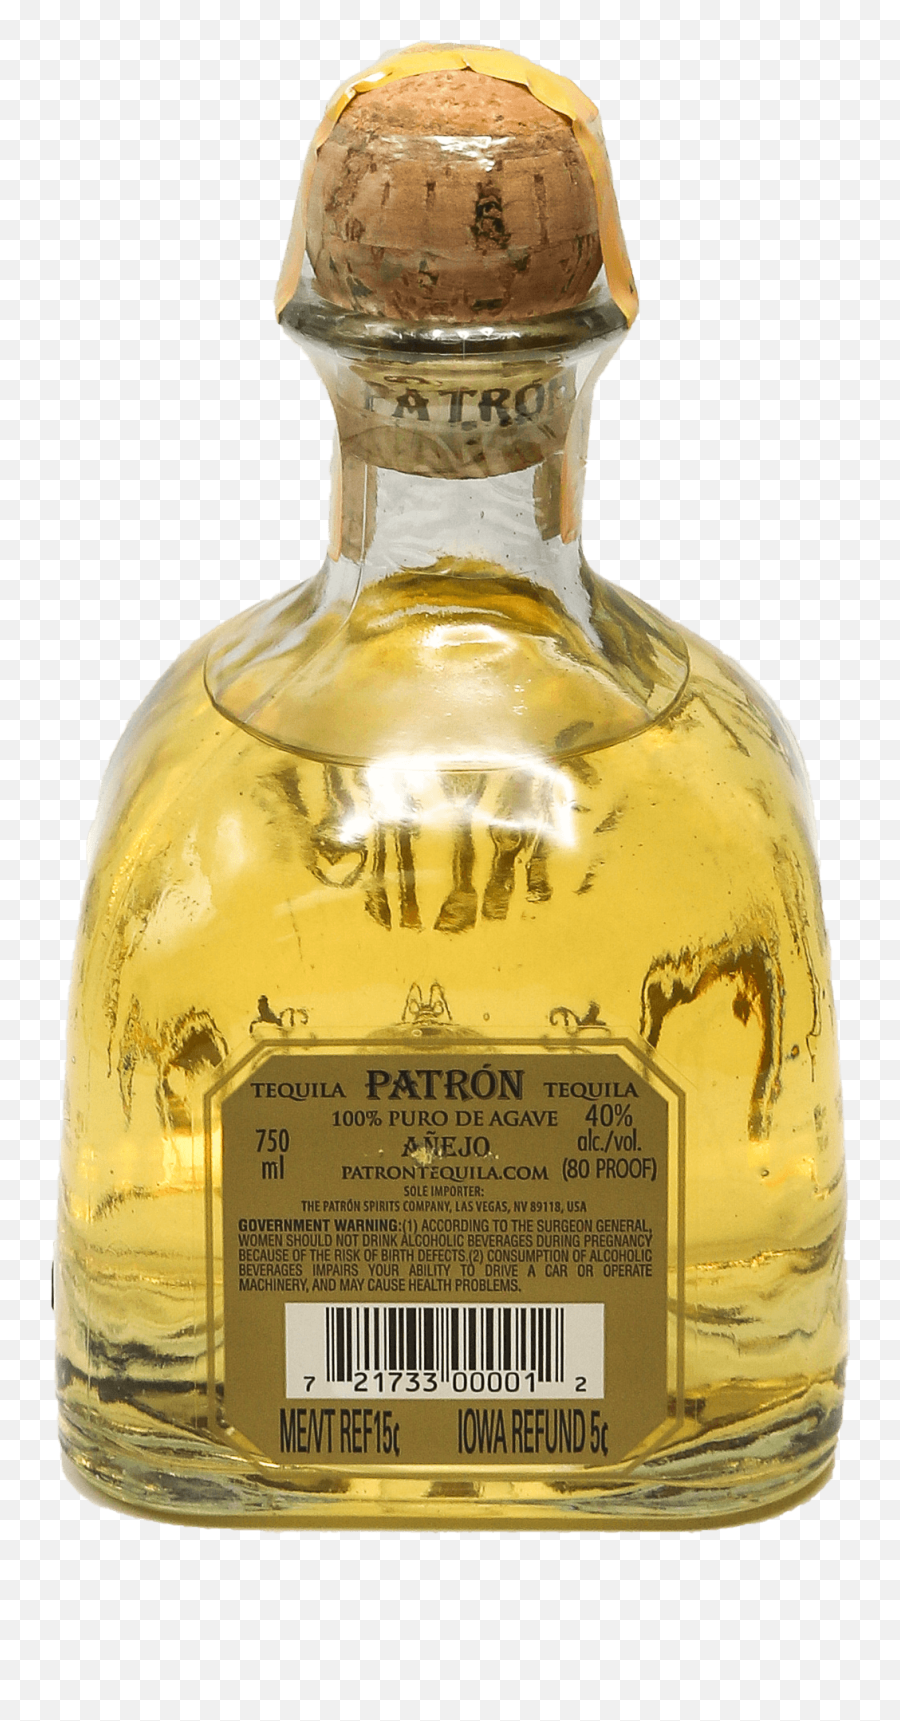 Patron Anejo Tequila 750ml - Bottle Stopper Saver Png,Patron Bottle Png